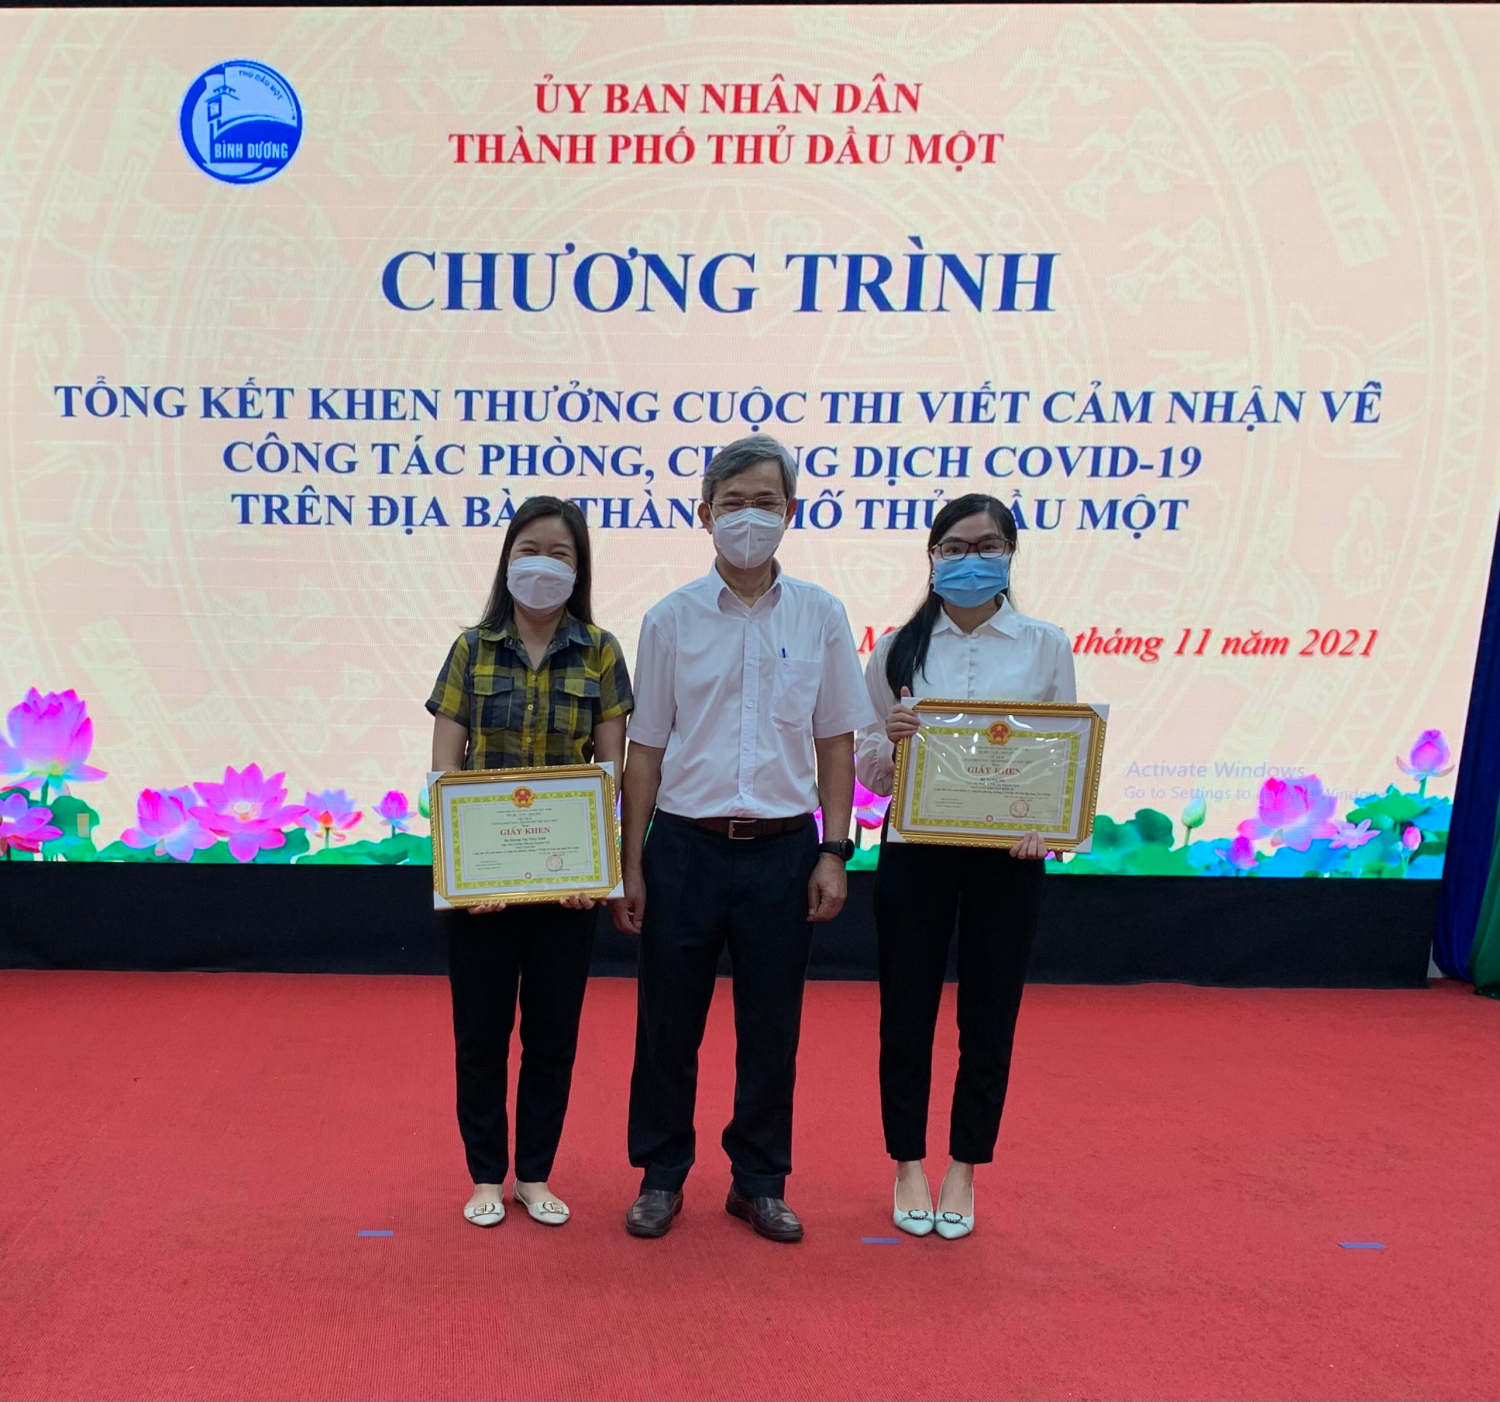 Chương trình tổng kết khen thưởng cuộc thi viết về công tác phòng chống COVID-19 trên địa bàn thành phố Thủ Dầu Một